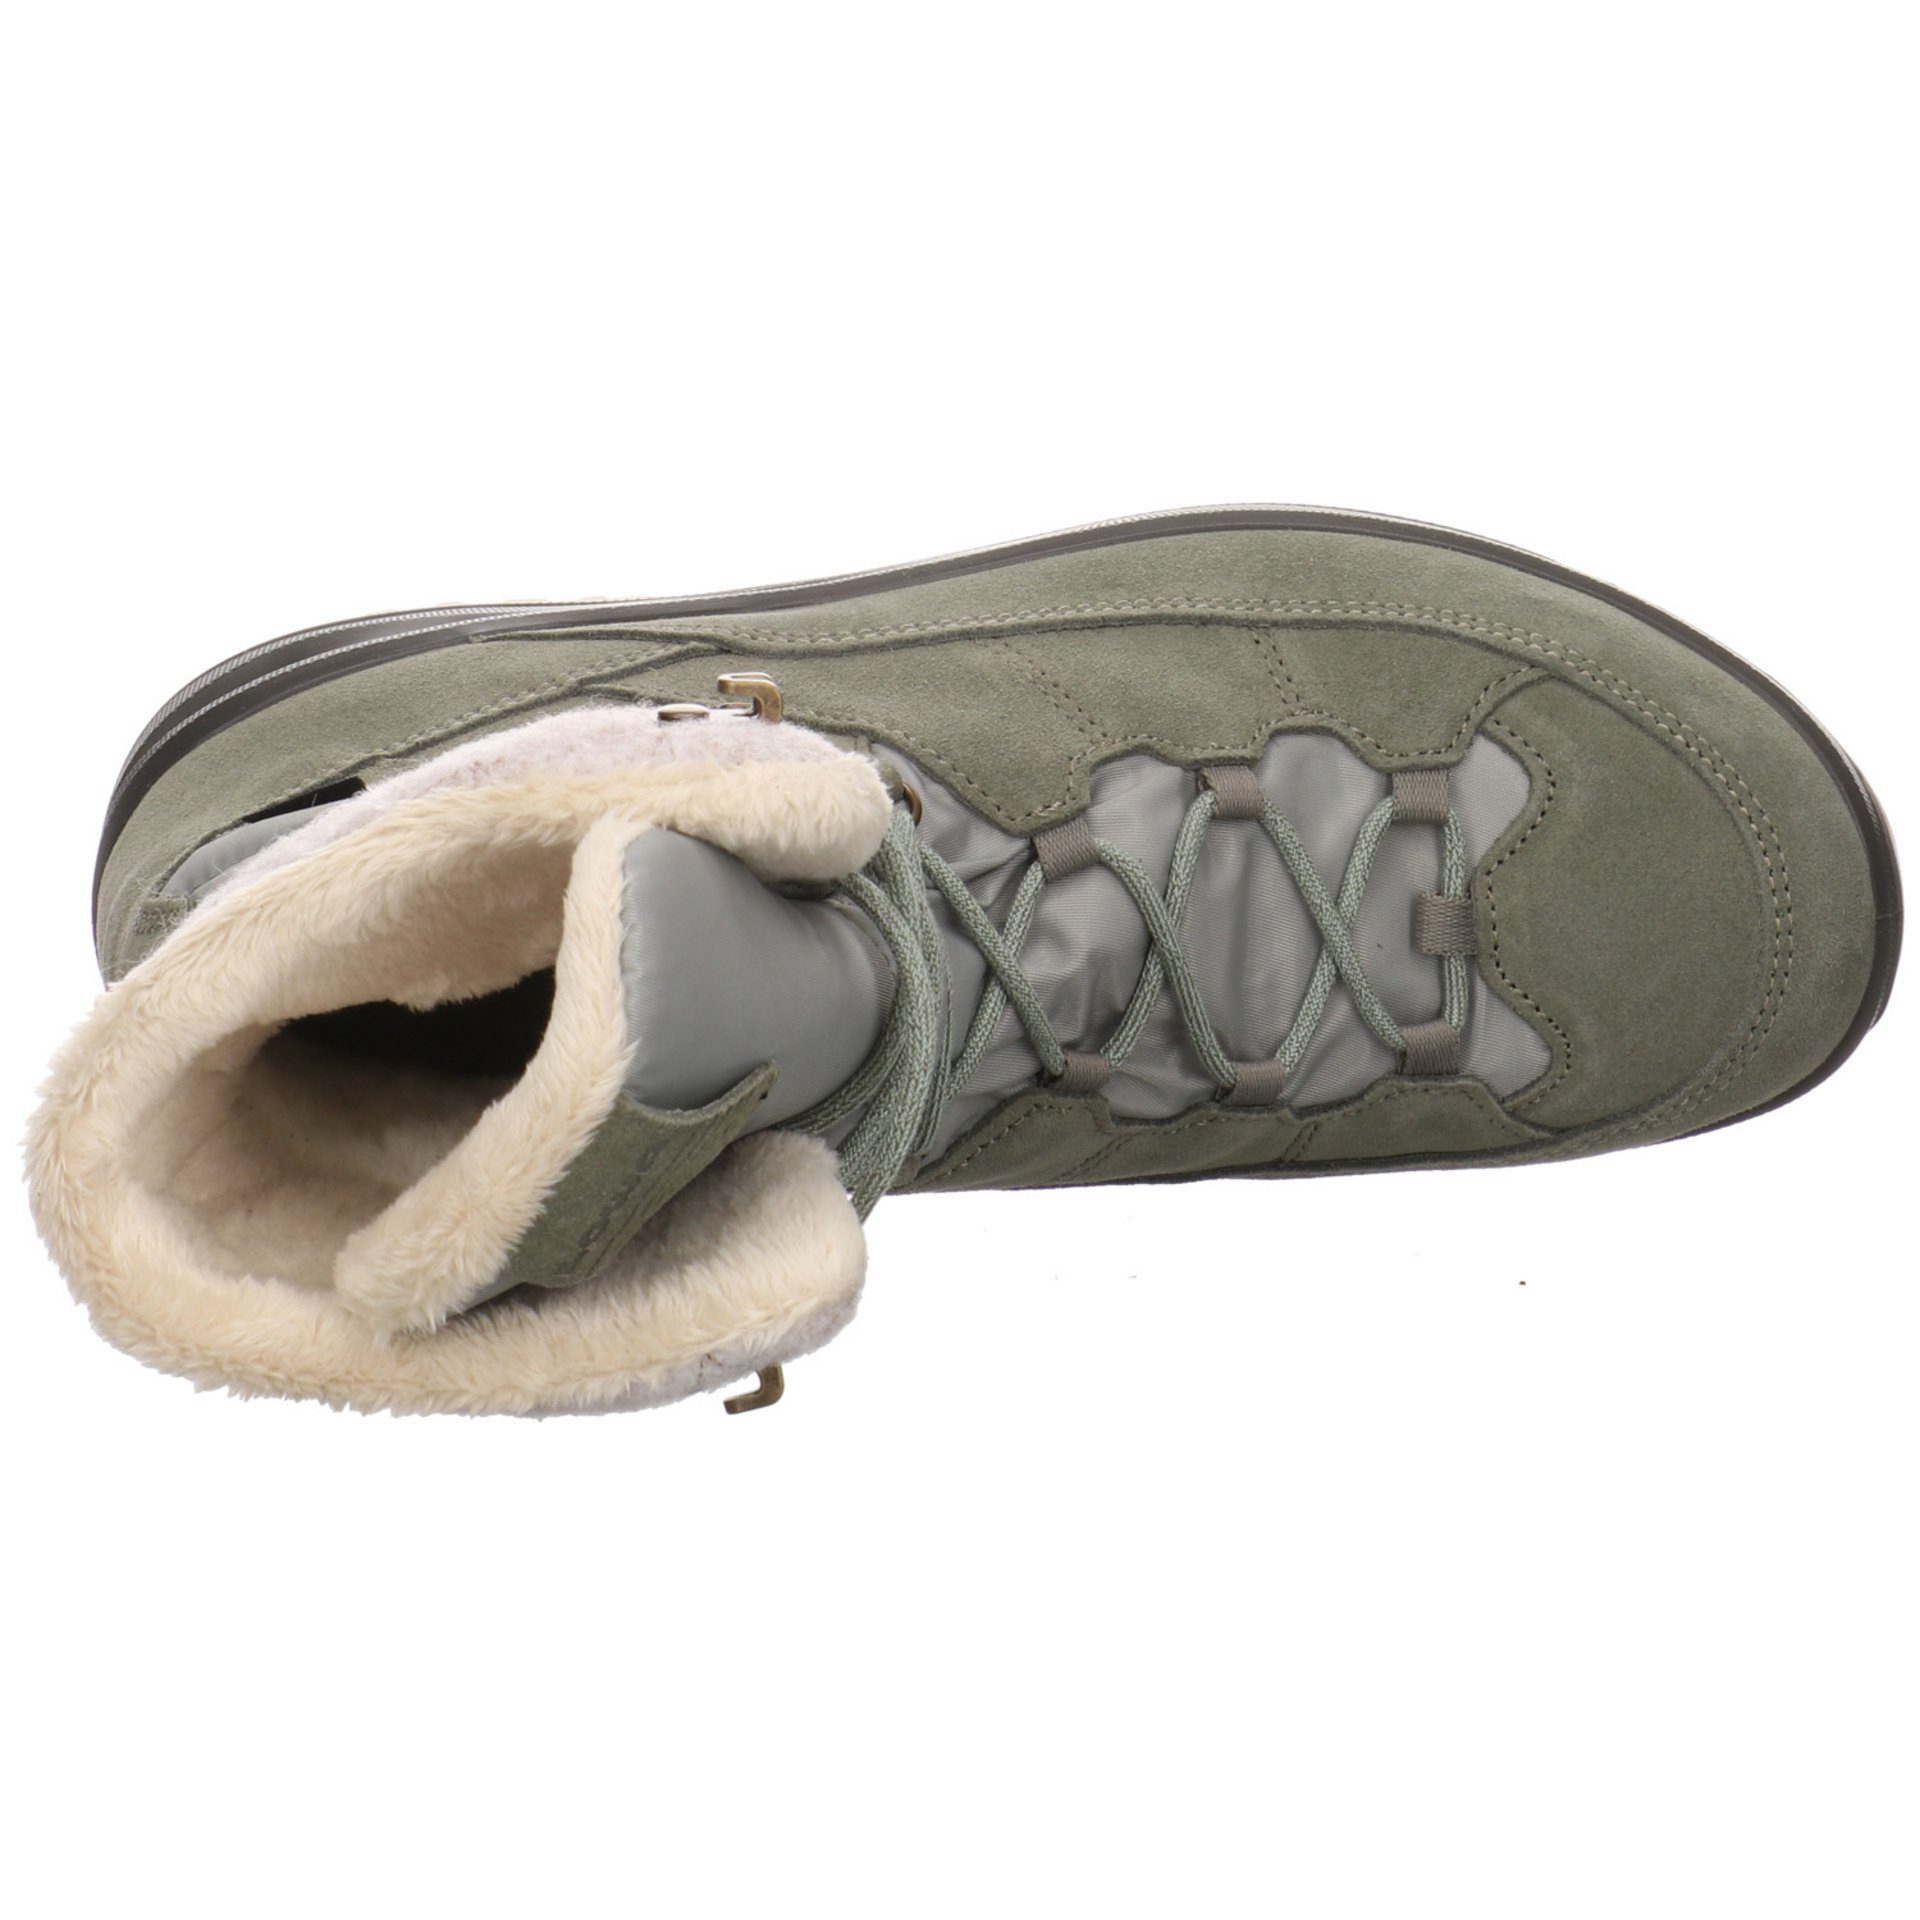 Lowa Damen Schuhe III seegras/jade Wanderschuh Outdoor Leder-/Textilkombination Outdoorschuh GTX Calceta